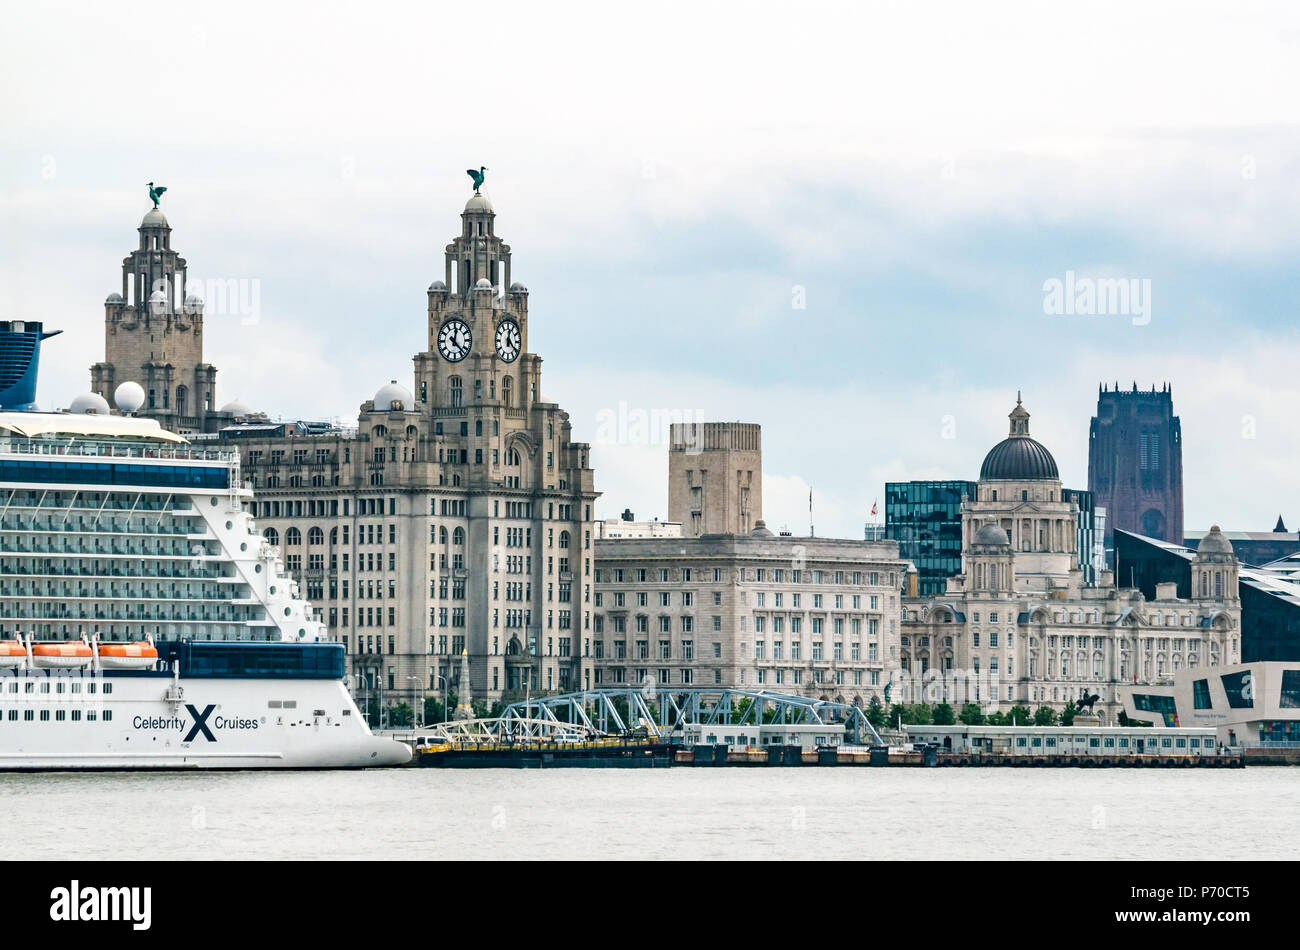 Vista delle torri dell'orologio dell'edificio Royal Liver con gli Uccelli Liver e gli orologi più grandi del Regno Unito, la nave da crociera Celebrity, Pier Head, Liverpool, Inghilterra, Regno Unito Foto Stock